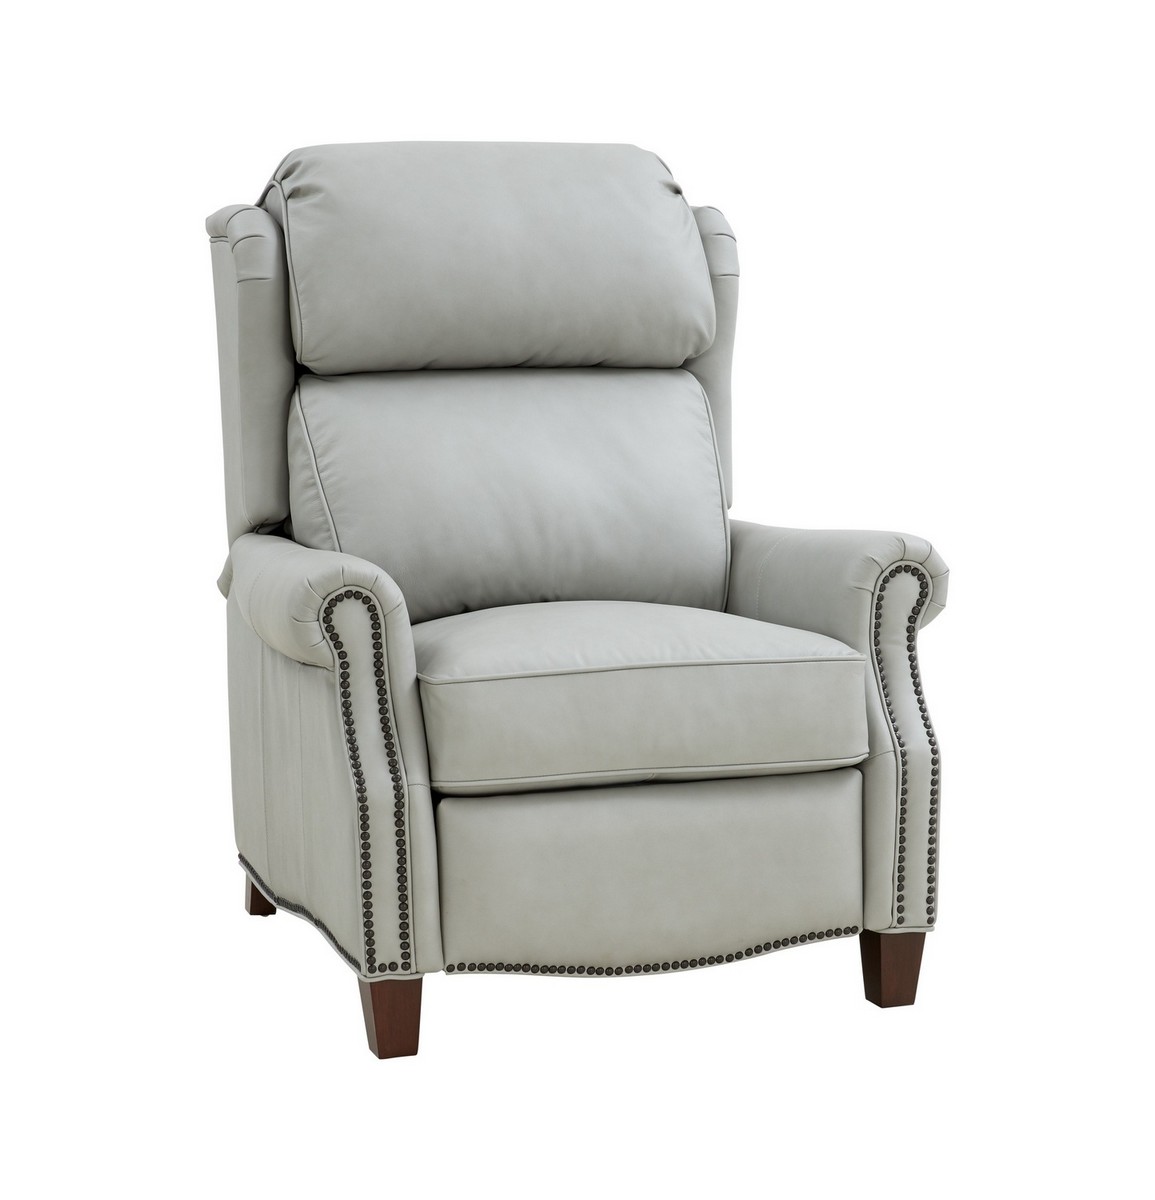 Barcalounger Meade Recliner Chair - Corbett Chromium/All Leather